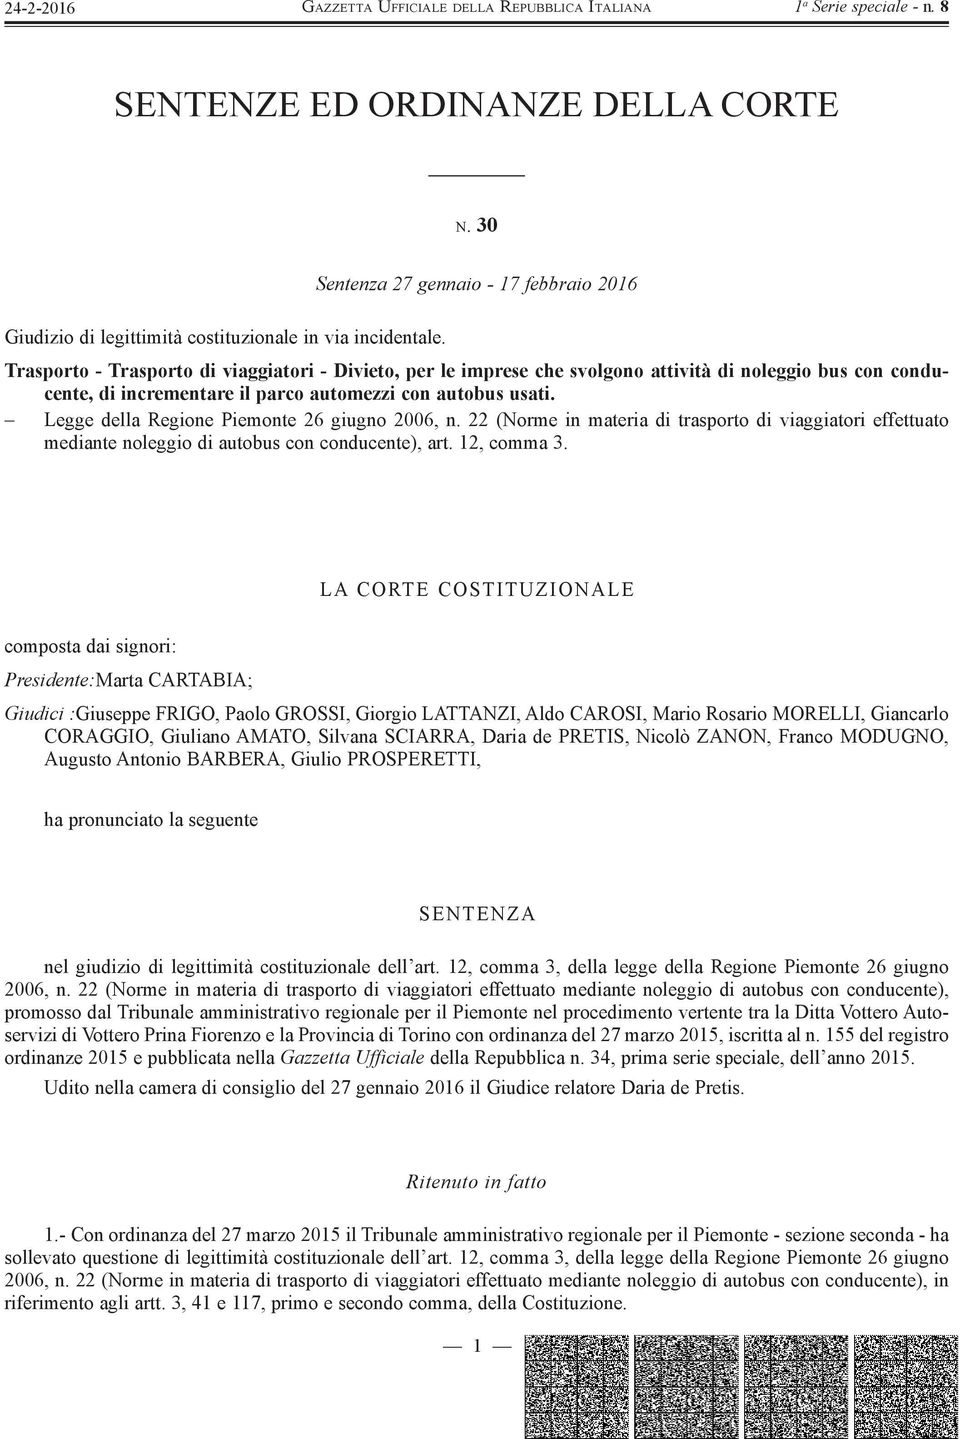 Legge della Regione Piemonte 26 giugno 2006, n. 22 (Norme in materia di trasporto di viaggiatori effettuato mediante noleggio di autobus con conducente), art. 12, comma 3.